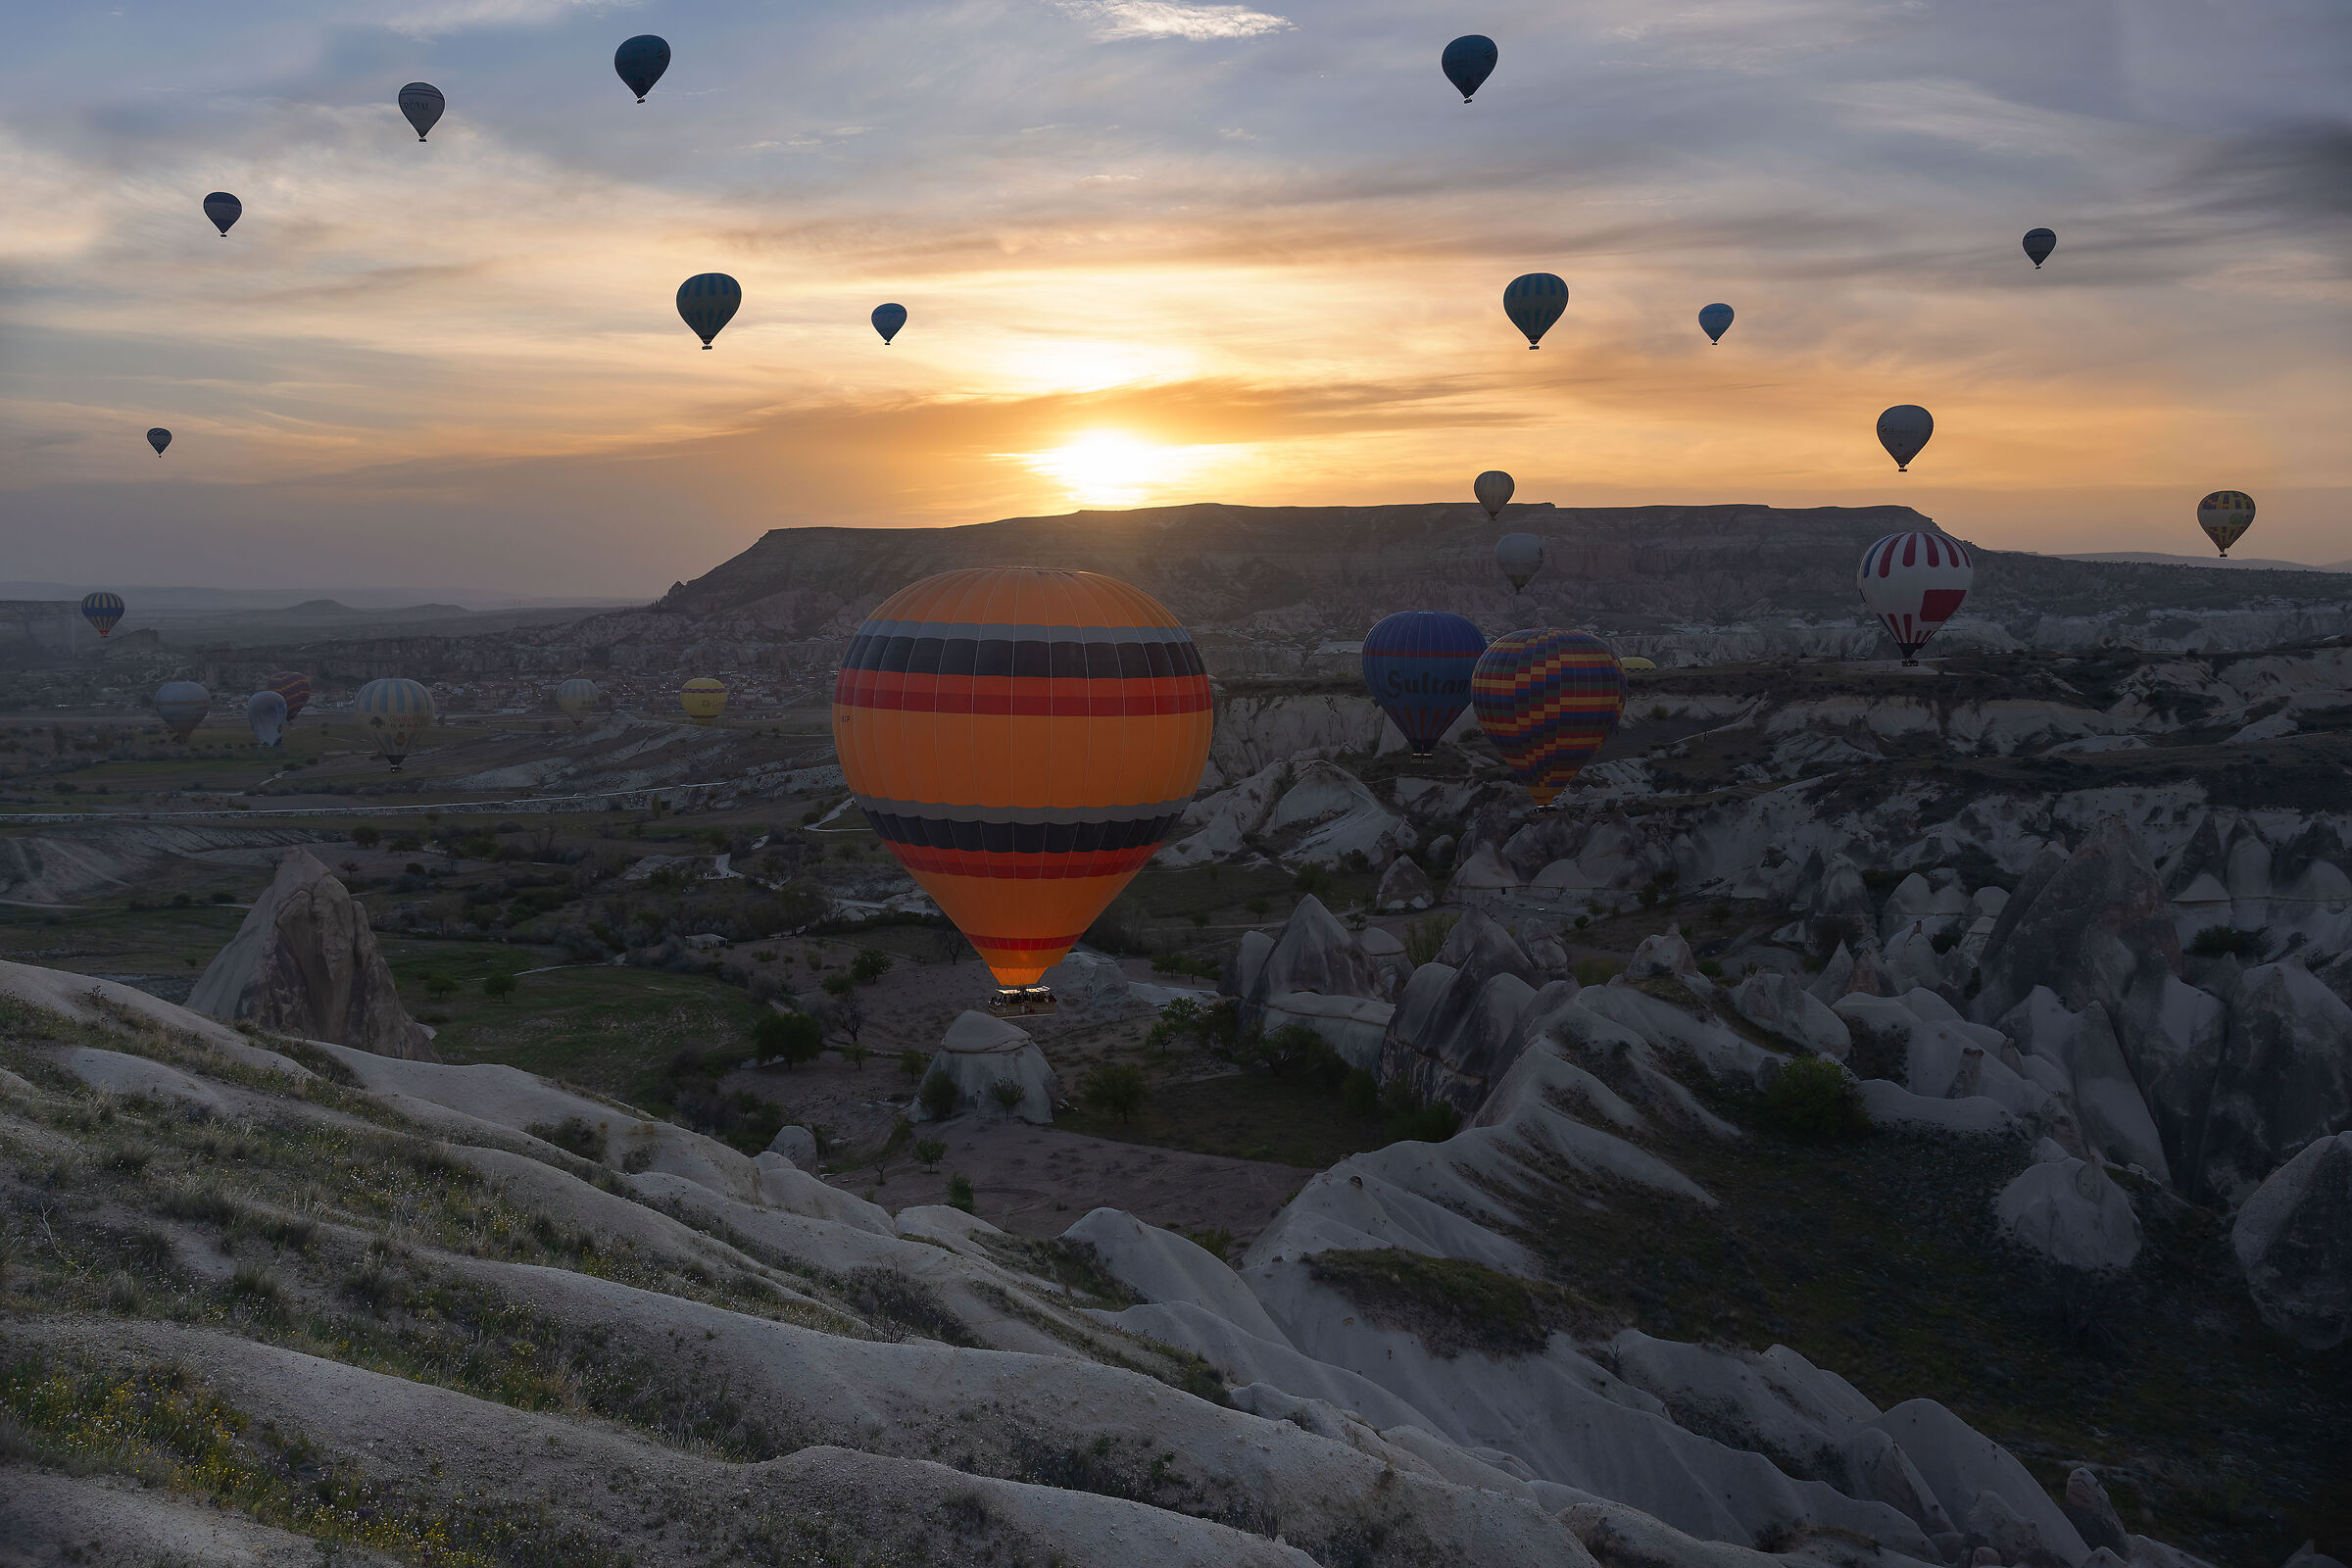 Cappadocia balloons...